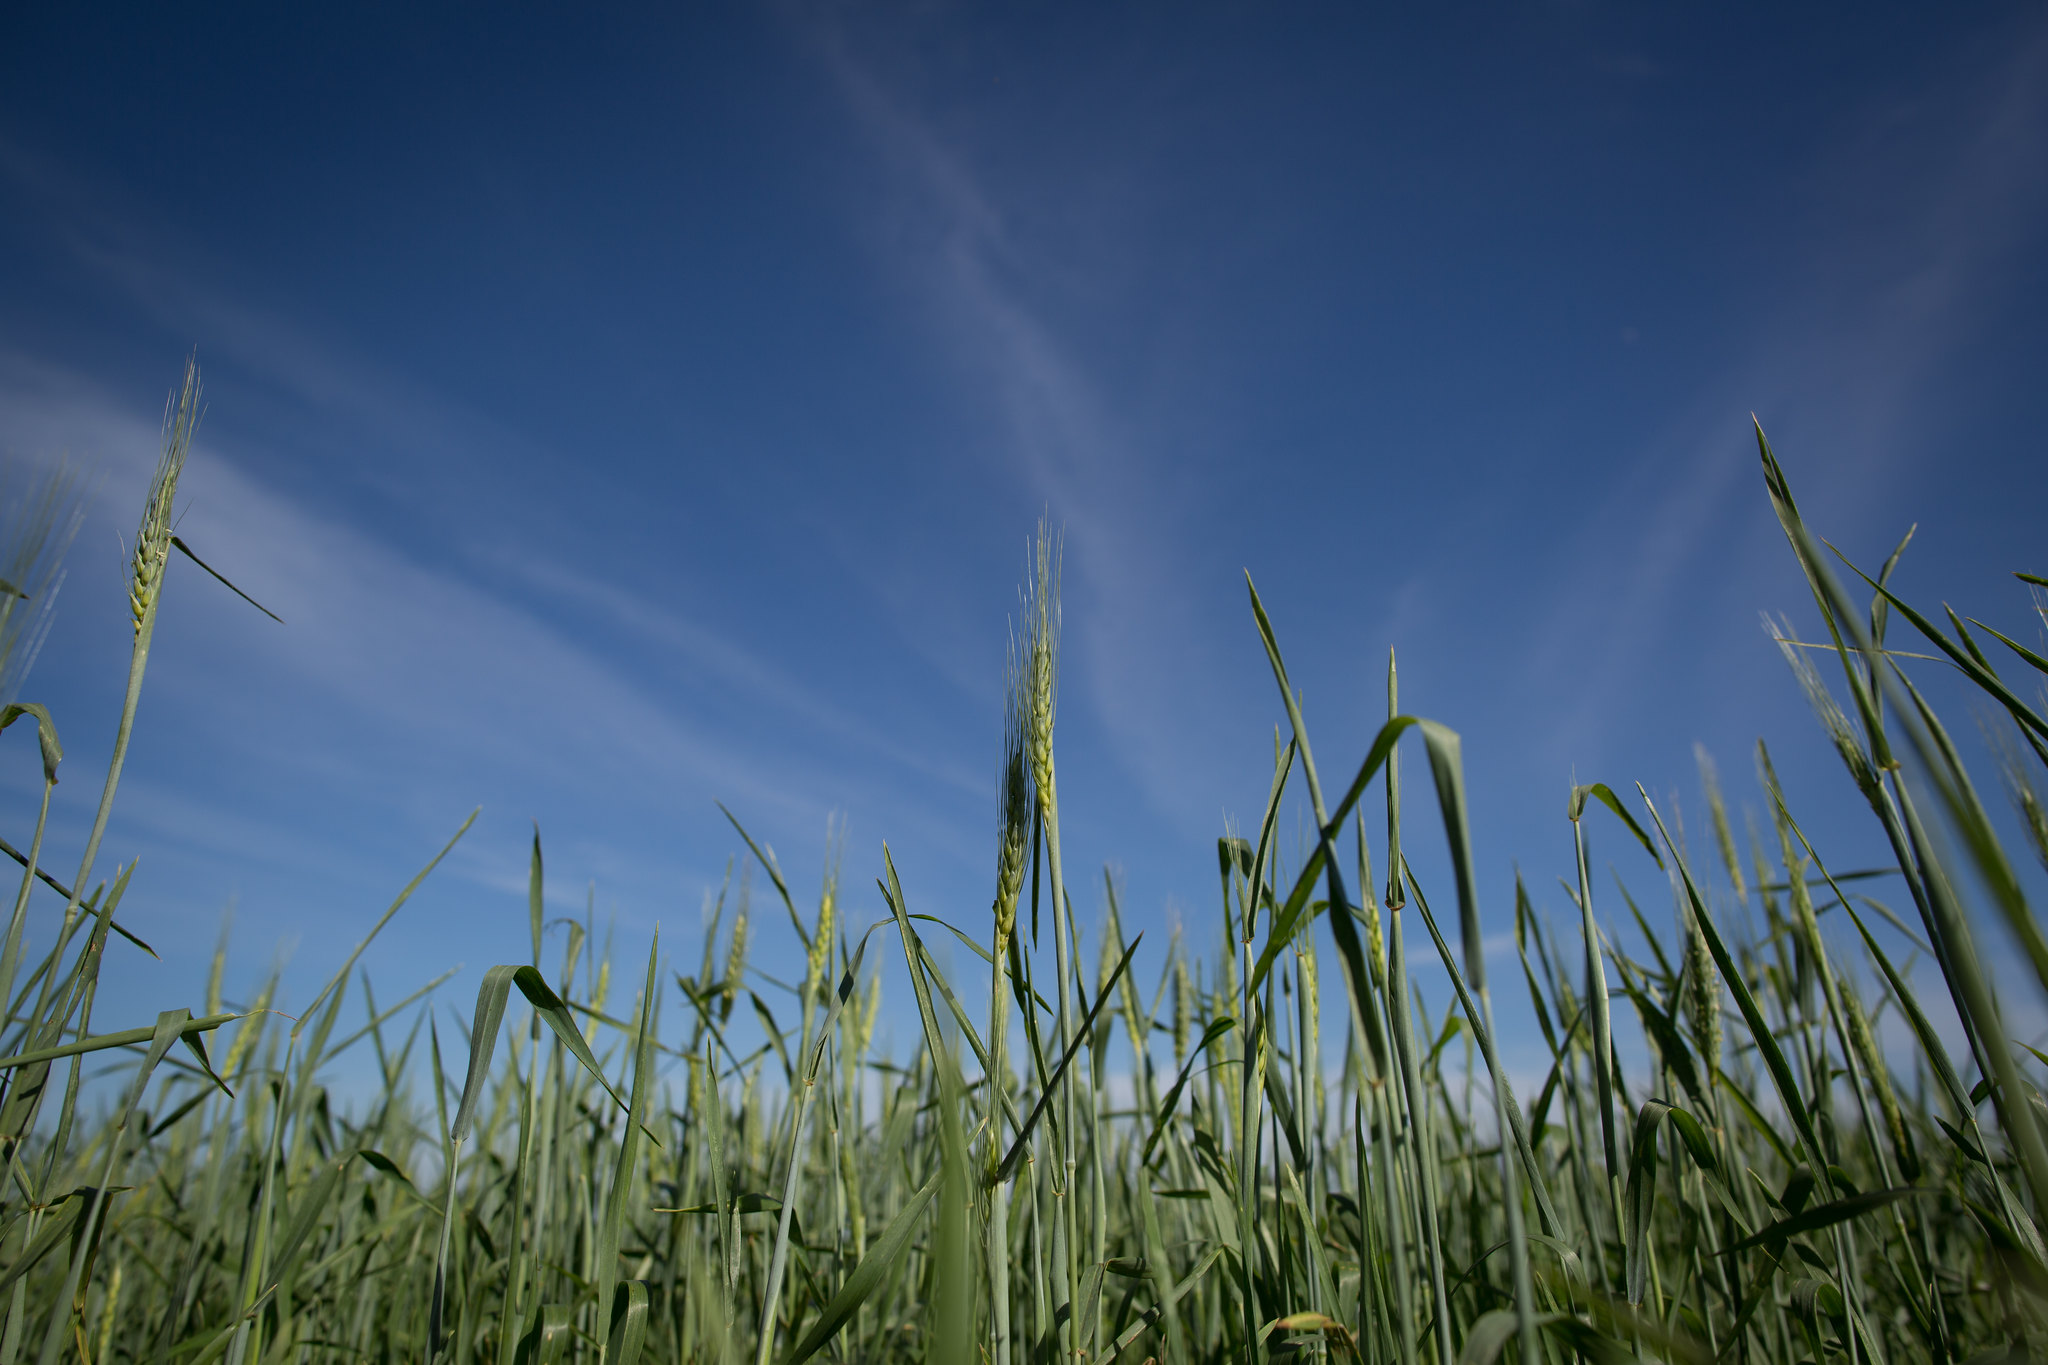 A estimativa de cultivo de trigo para safra 2022 é de 1.413.763 hectares, representando aumento de 15,04% em relação à safra anterior. - Foto: Wenderson Araujo/CNA